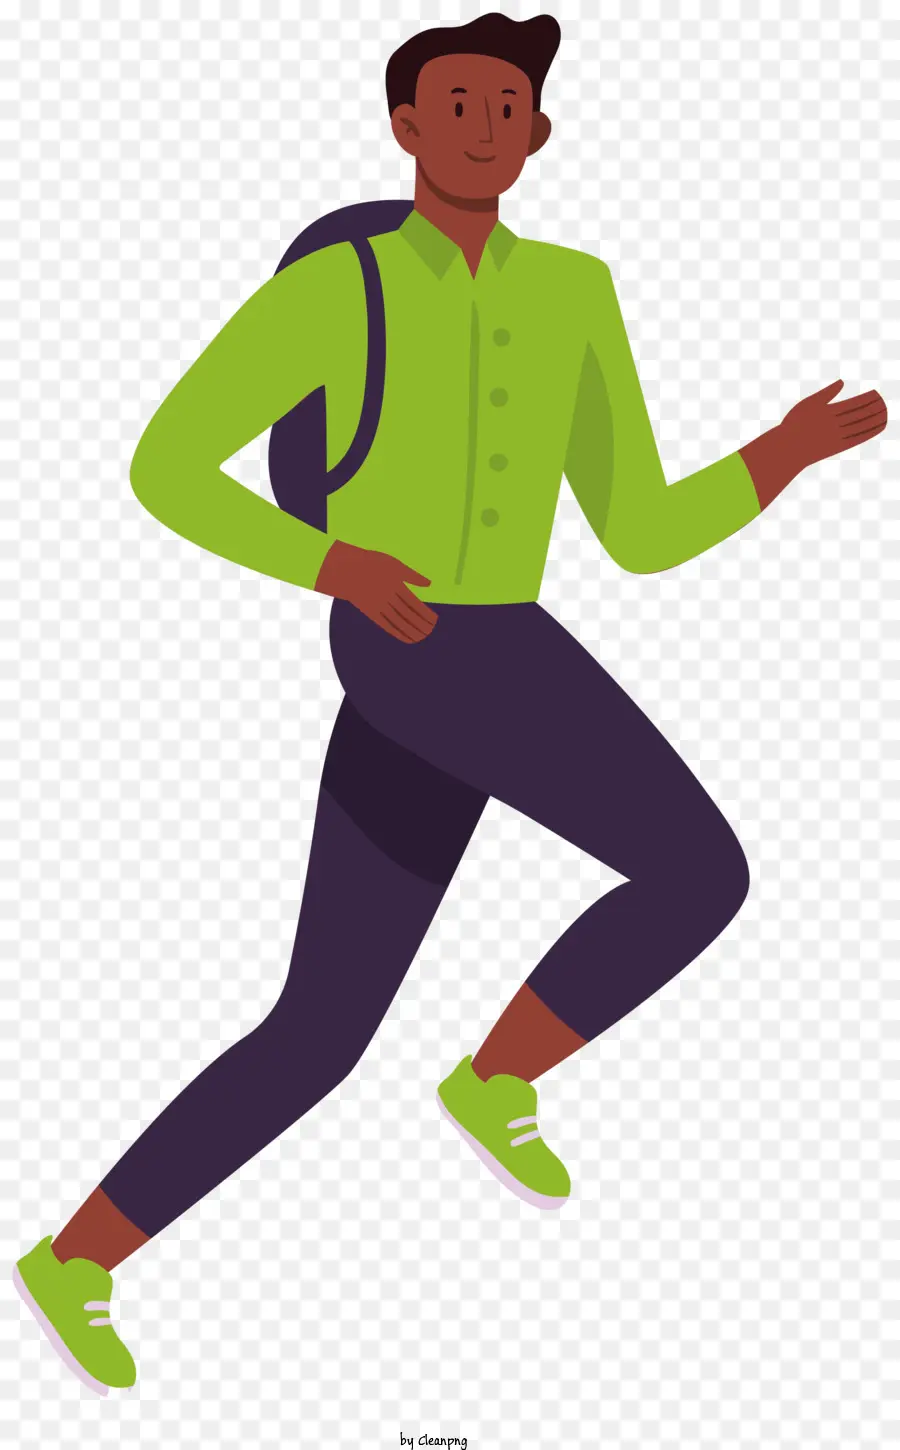 Running Man Backpack Grüne Hemd schwarze Hosen schwarze Schuhe - Mann, der mit Rucksack rennt und grünes Hemd trägt